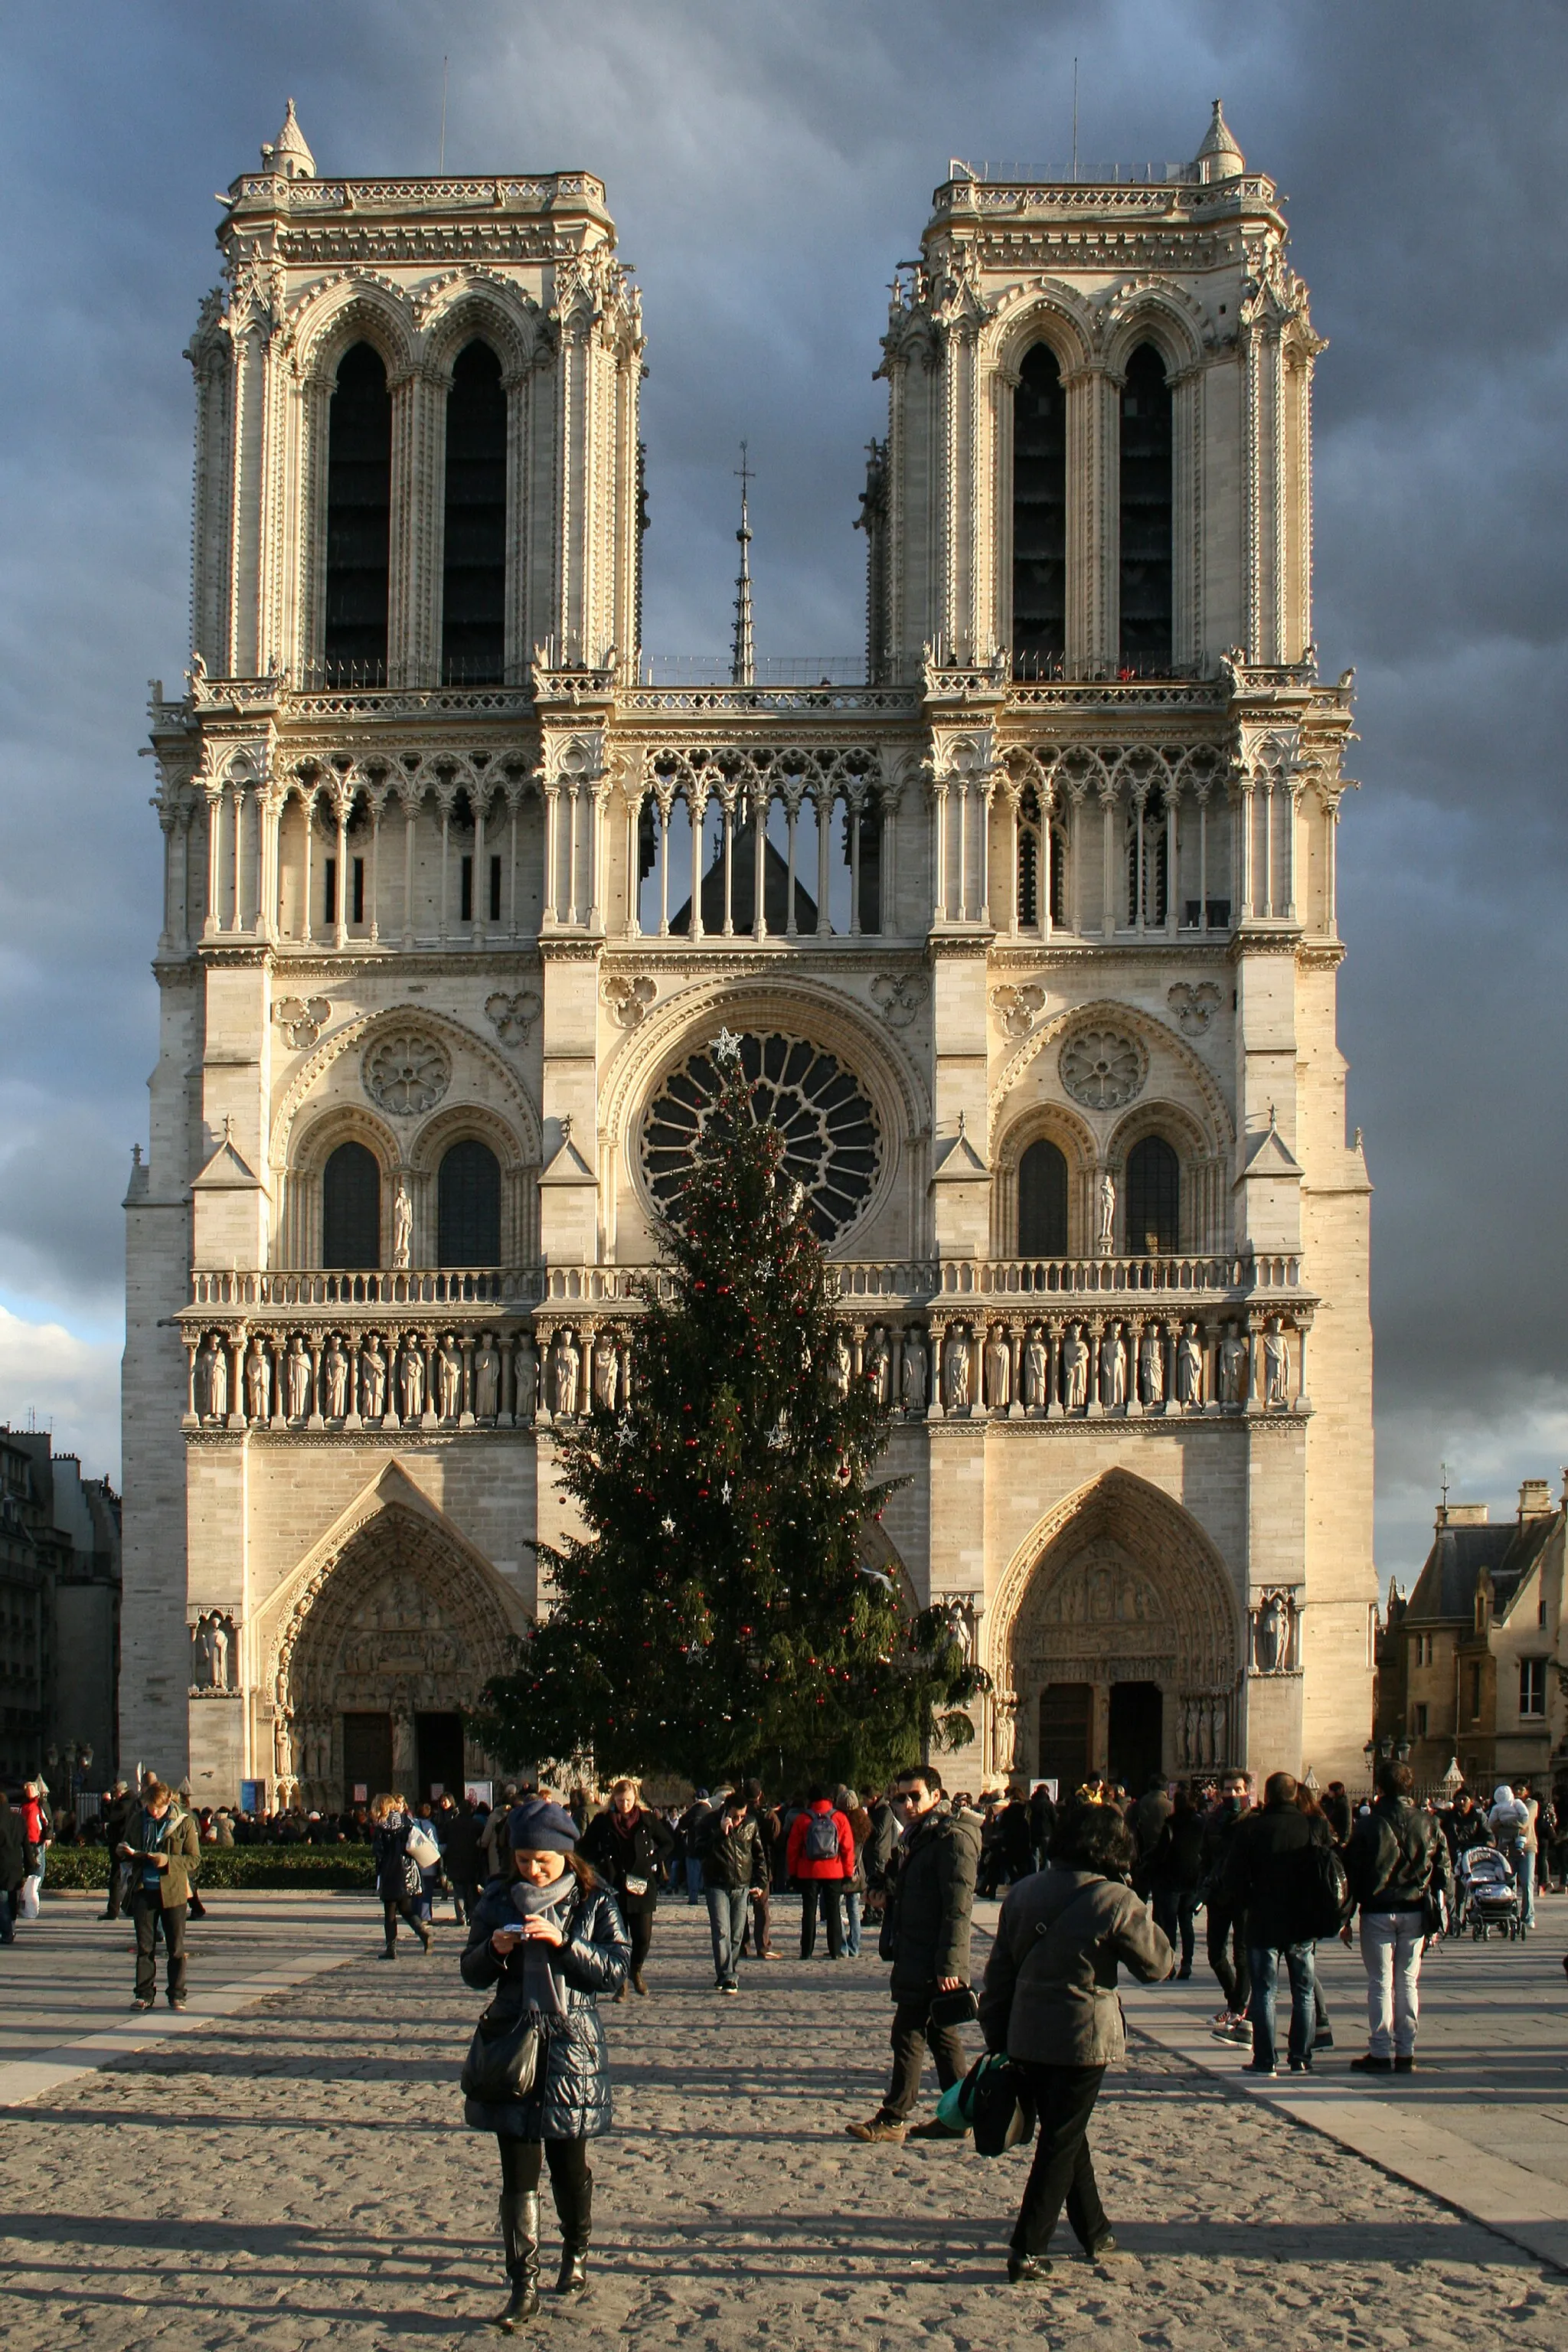 Photo showing: The Notre Dame de Paris cathedral as seen from the parvis - Île de la Cité island in Paris, France.